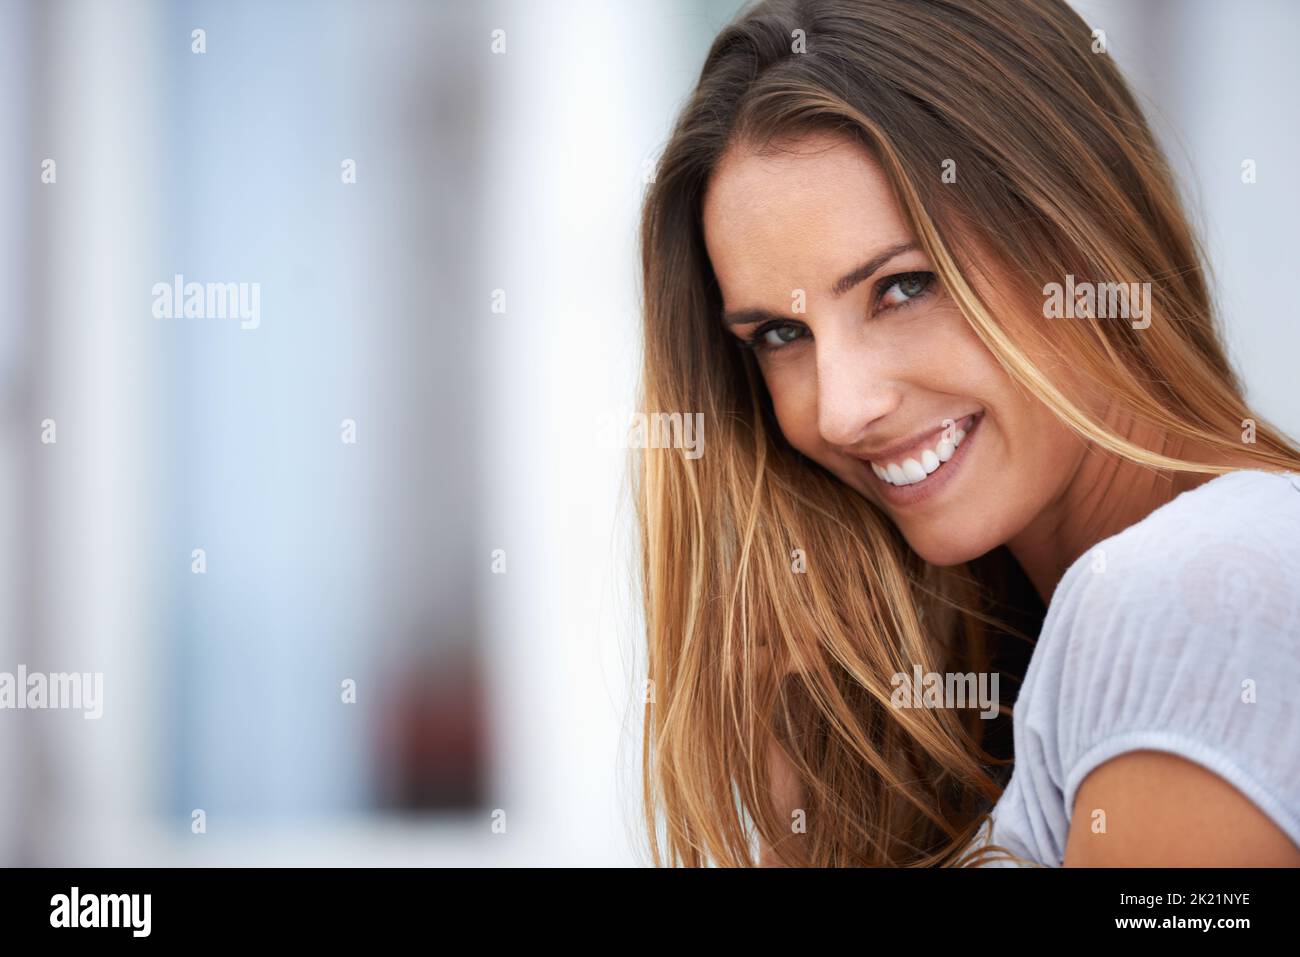 Fai il tuo tipo di felicità. Ritratto di una bella giovane donna sorridente alla fotocamera mentre si siede fuori. Foto Stock